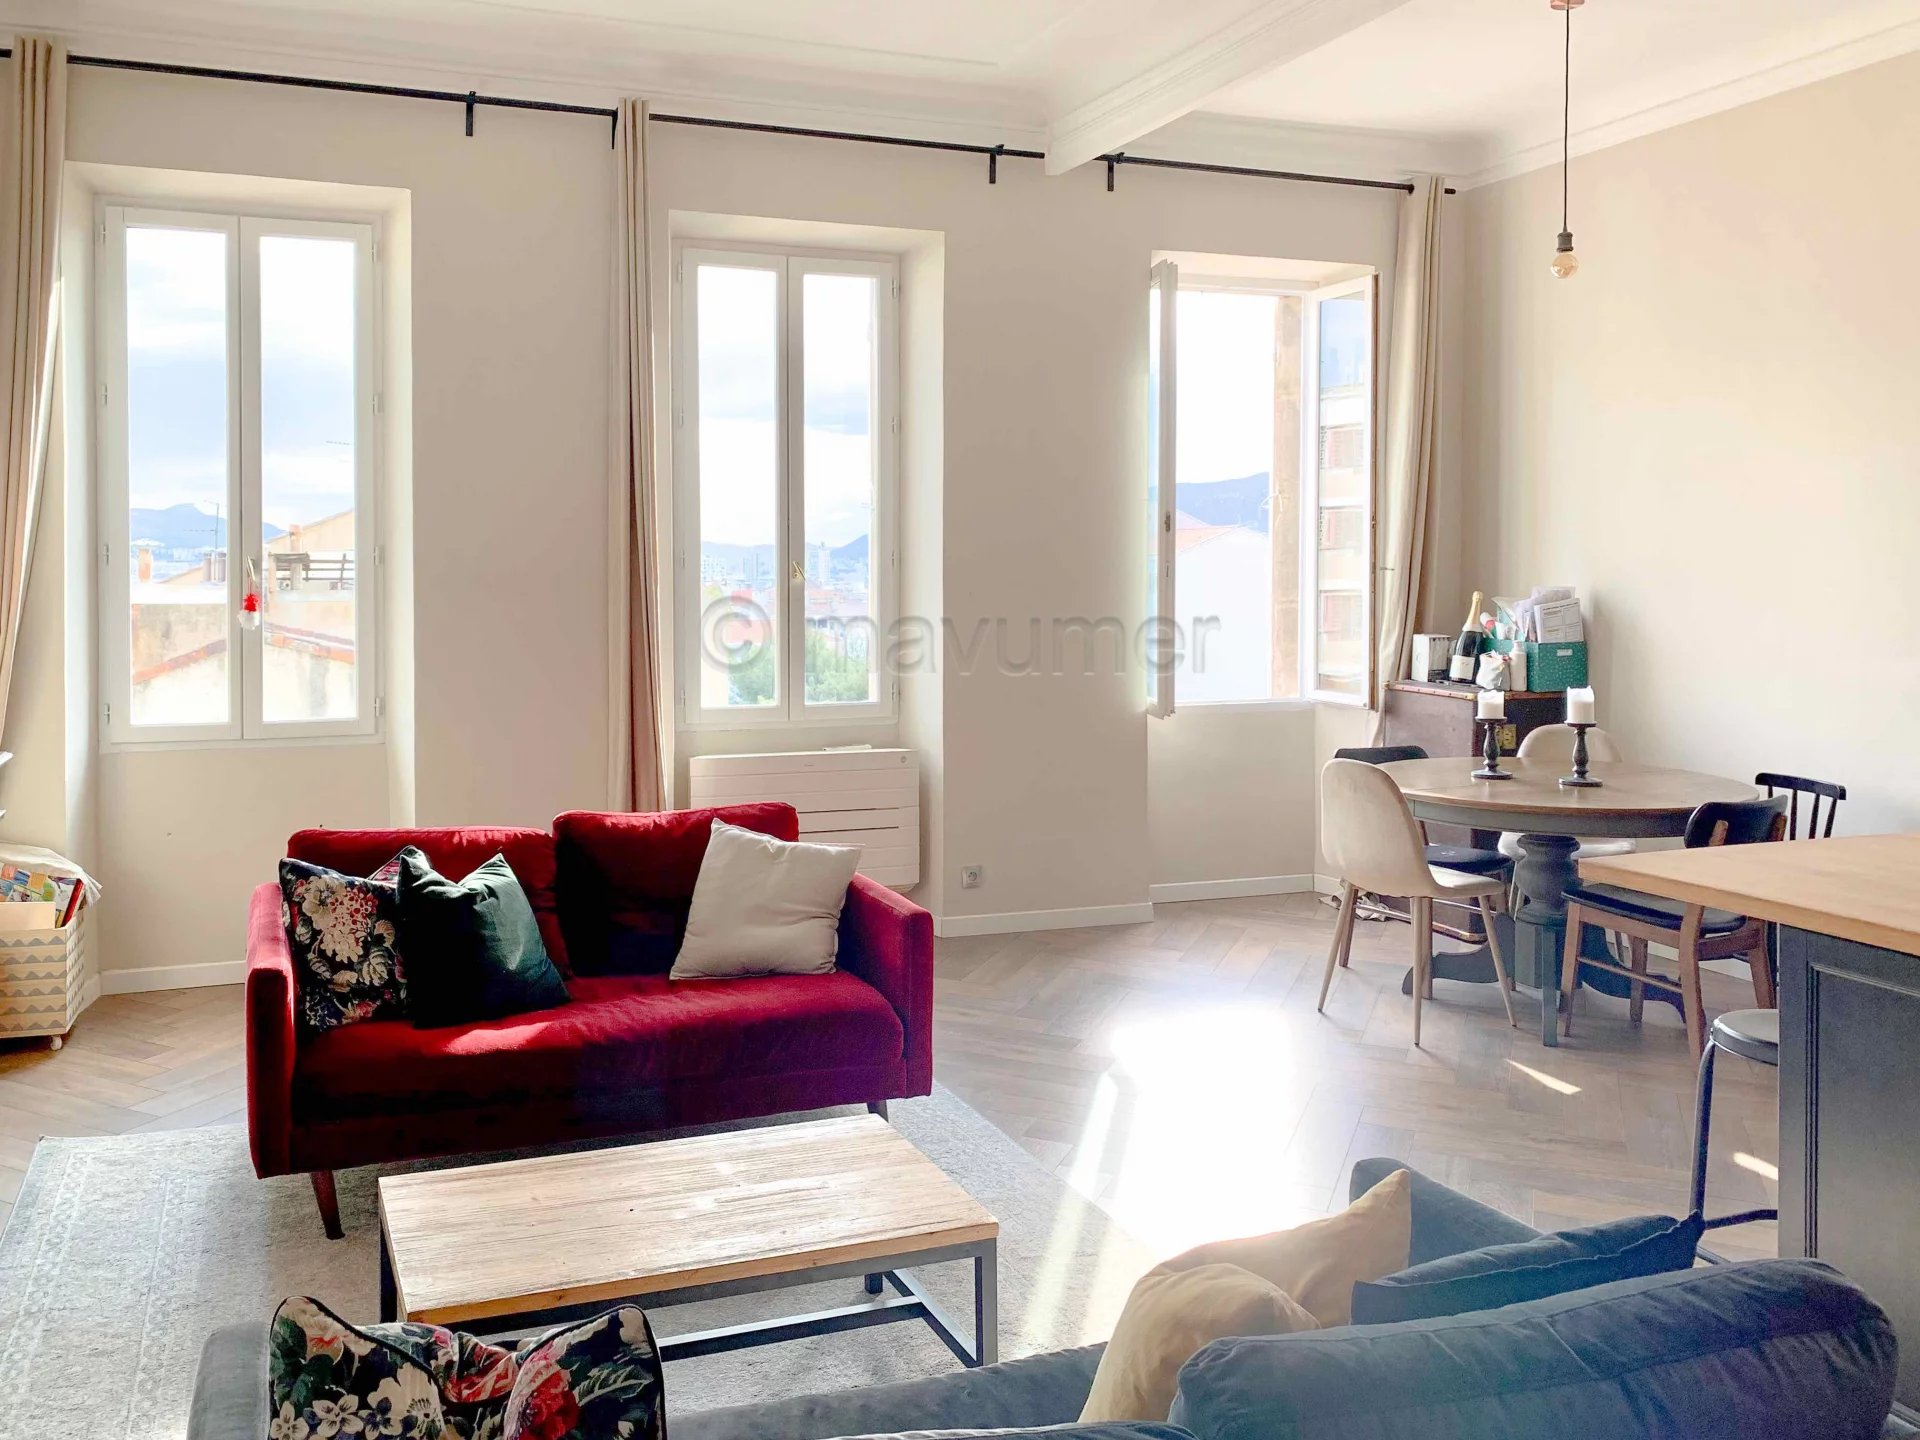 Sale Apartment - Marseille 6ème Vauban